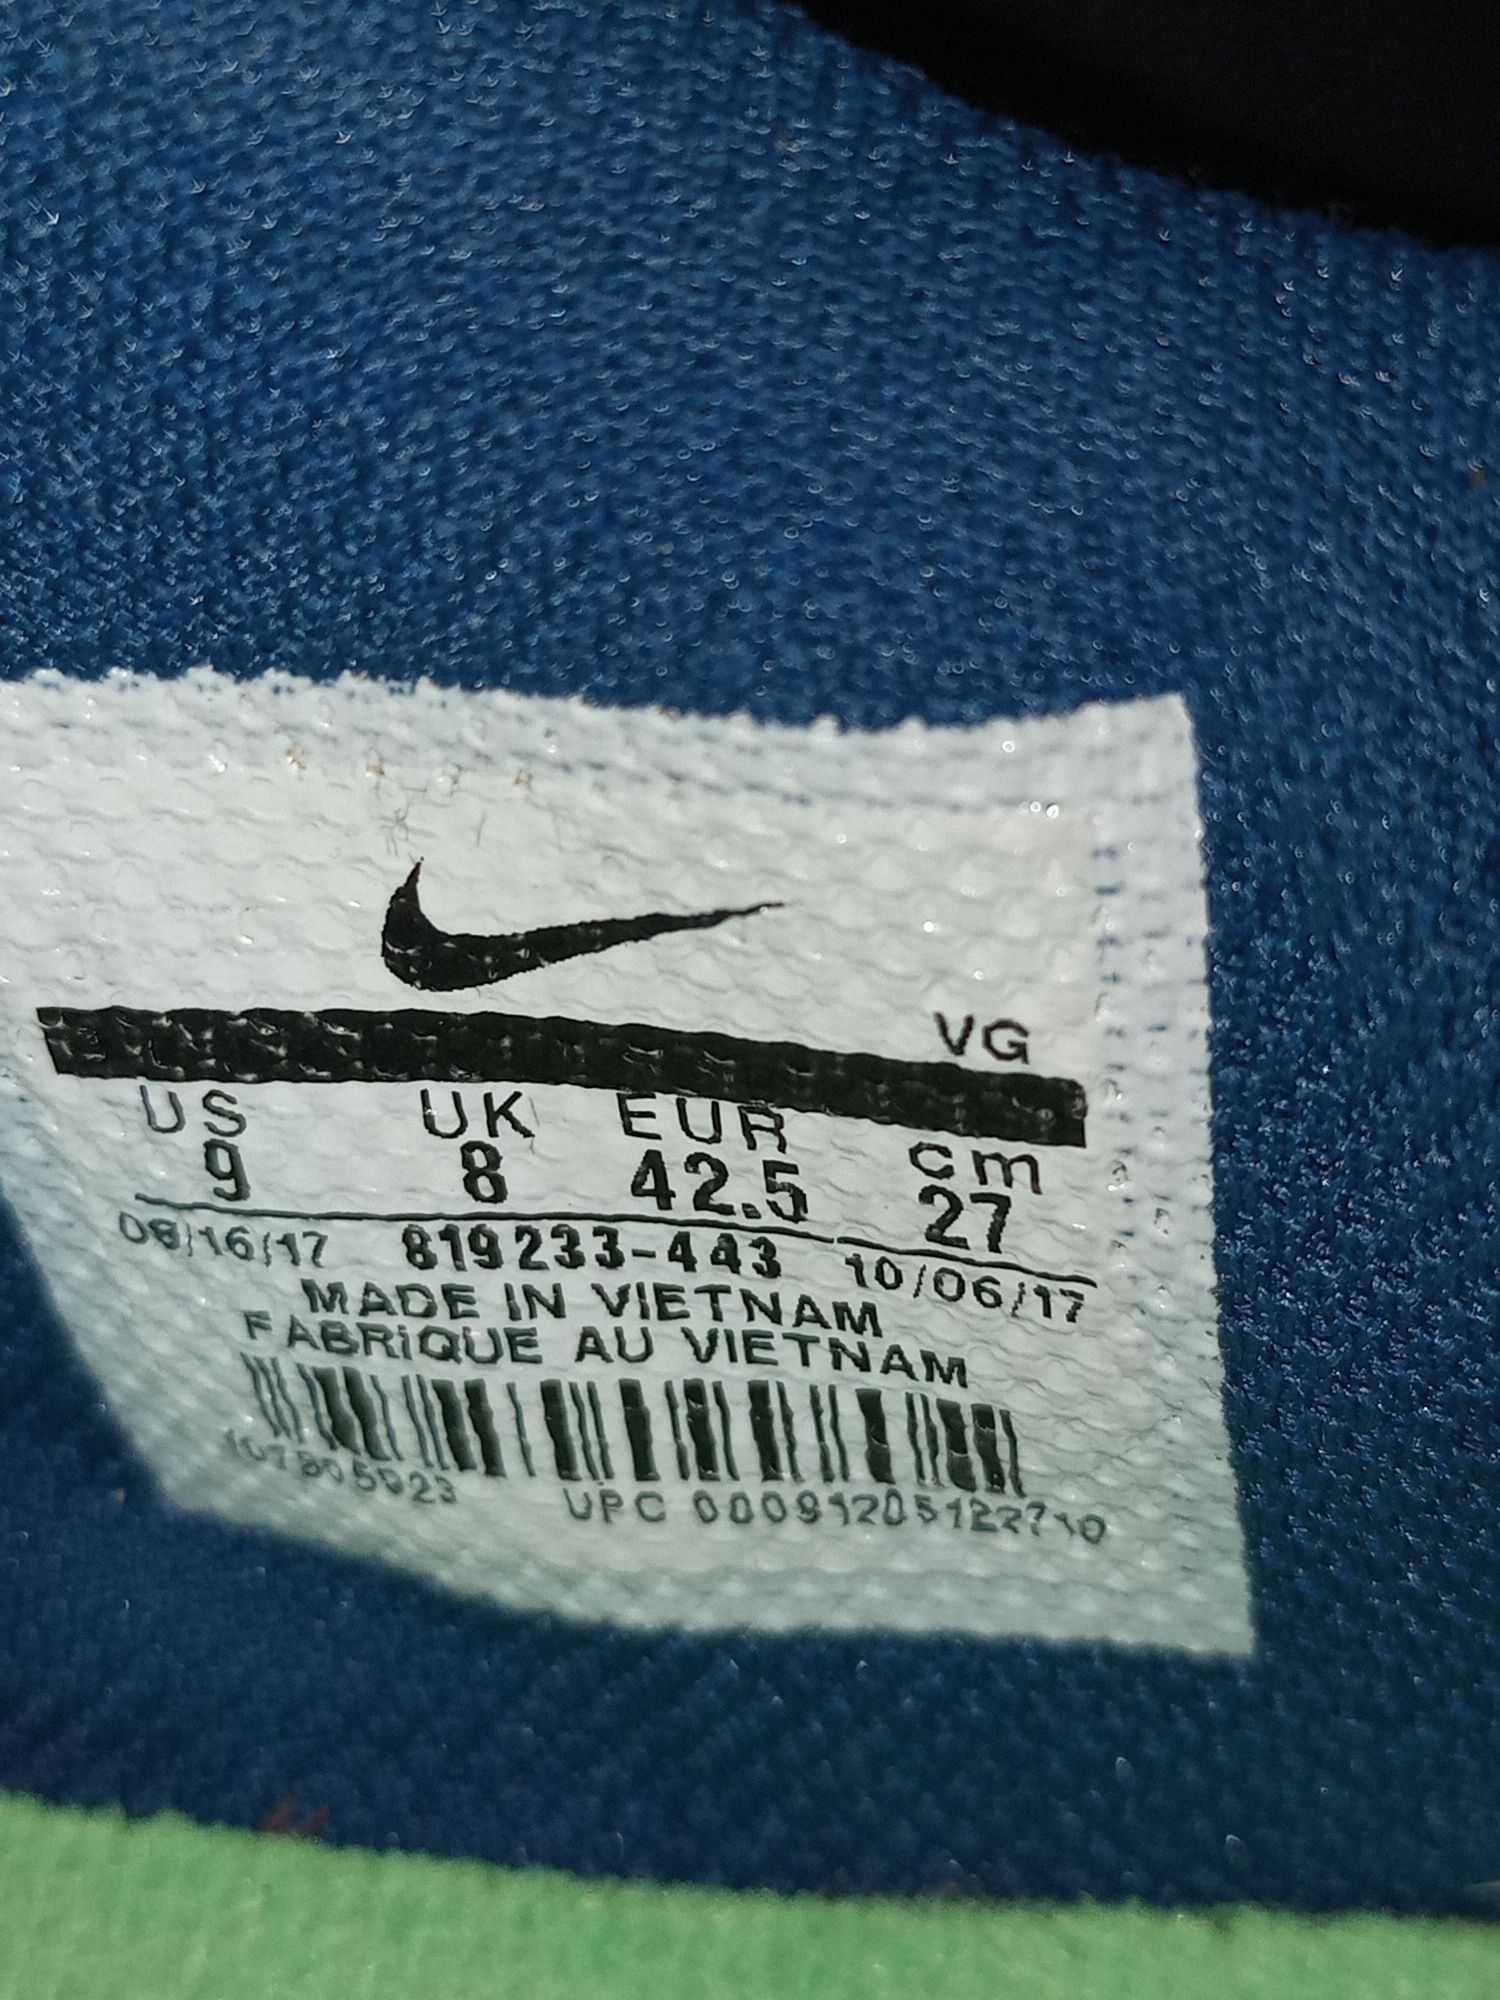 Бутси кожані Nike Tіempo розмір 42.5 довжина стельки 27 см